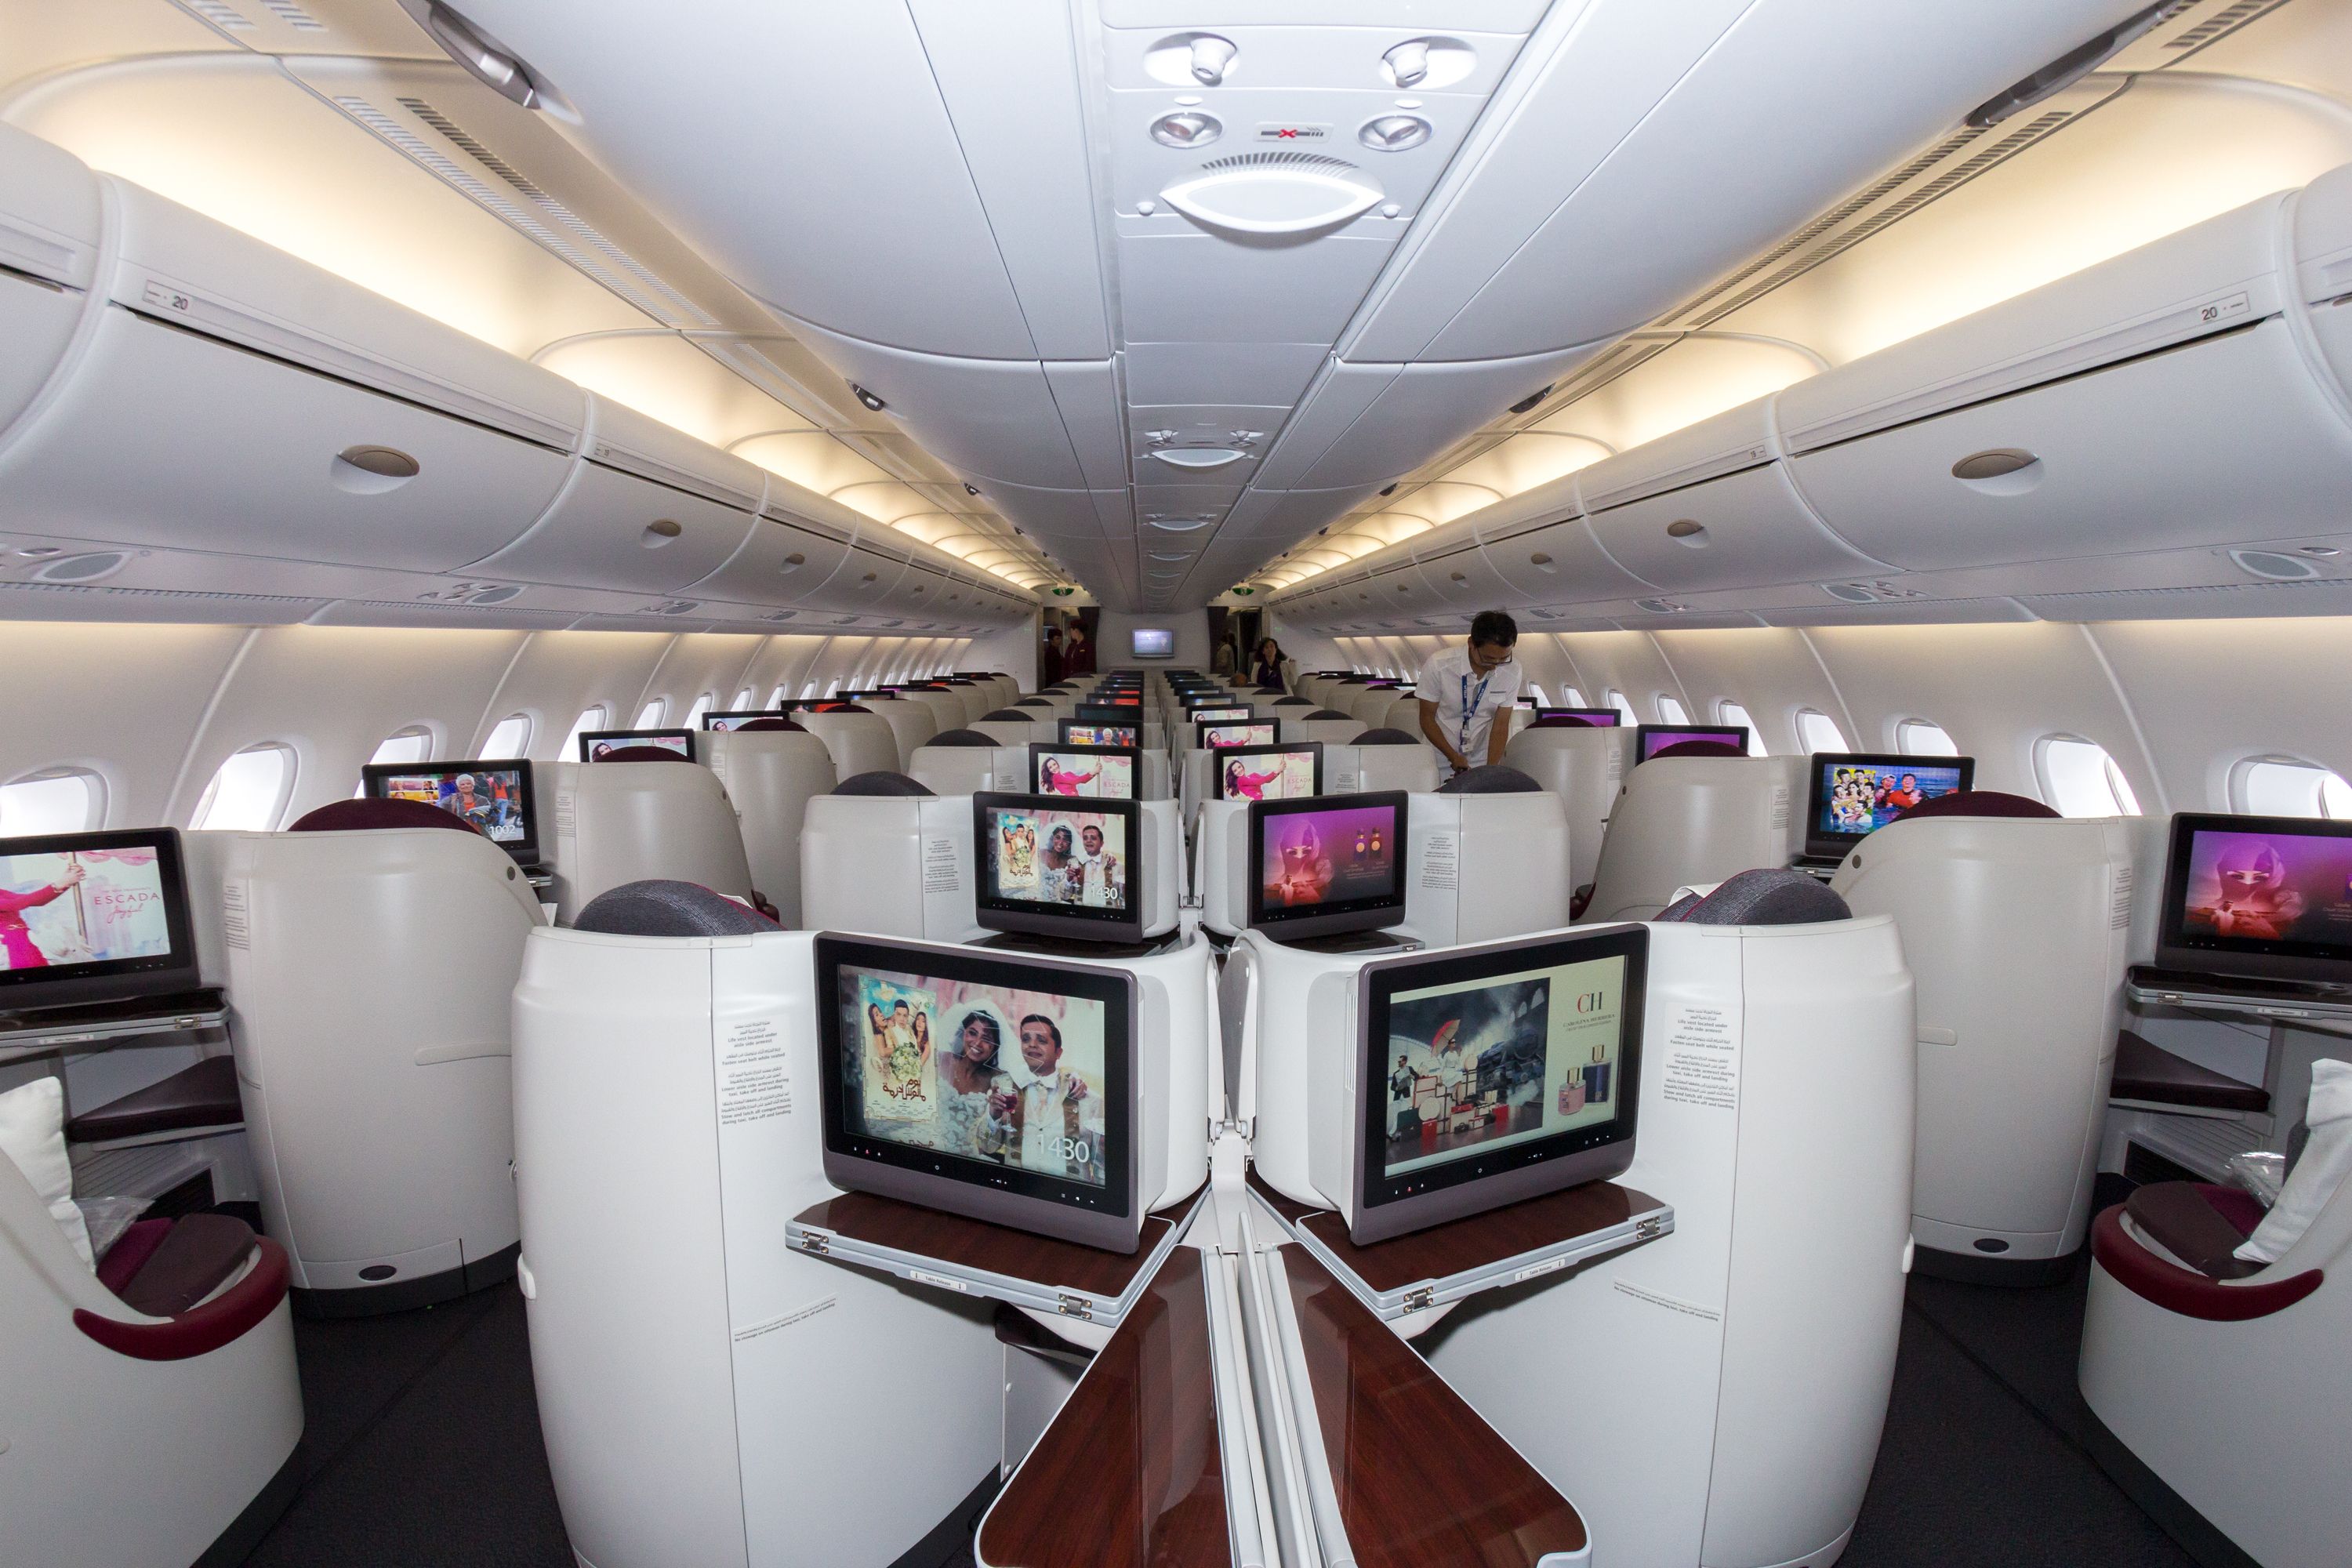 Inside Qatar Airways Airbus A380 business class cabin.